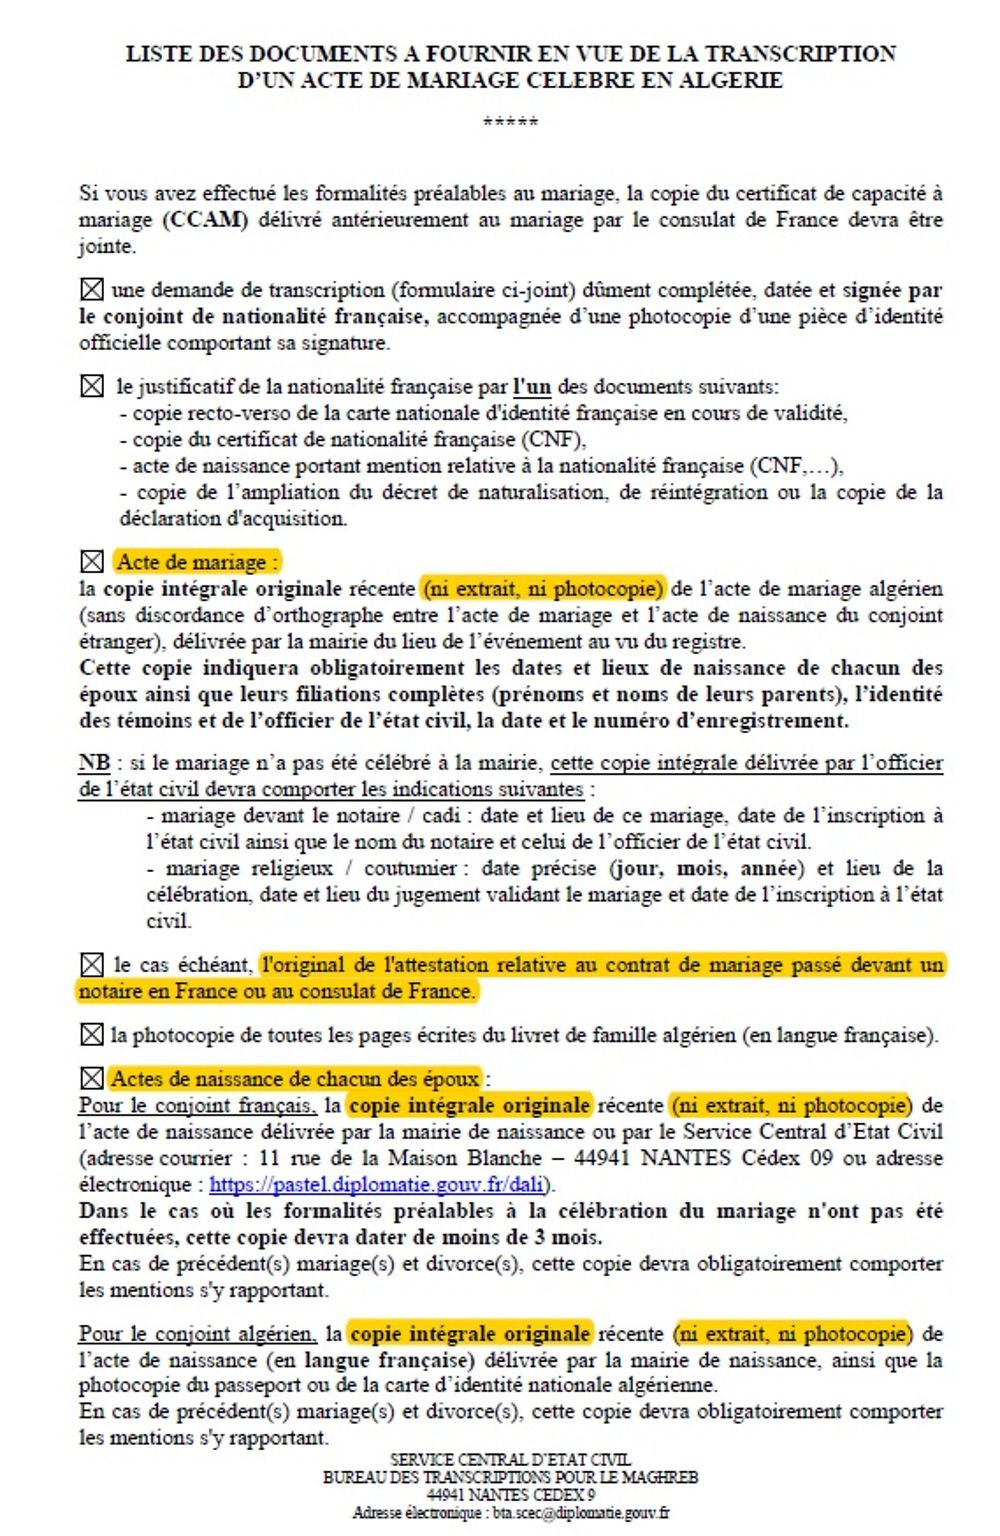 Re: Certificat de capacité à mariage (ccam) - formalités pour se marier en Algerie - Nyni